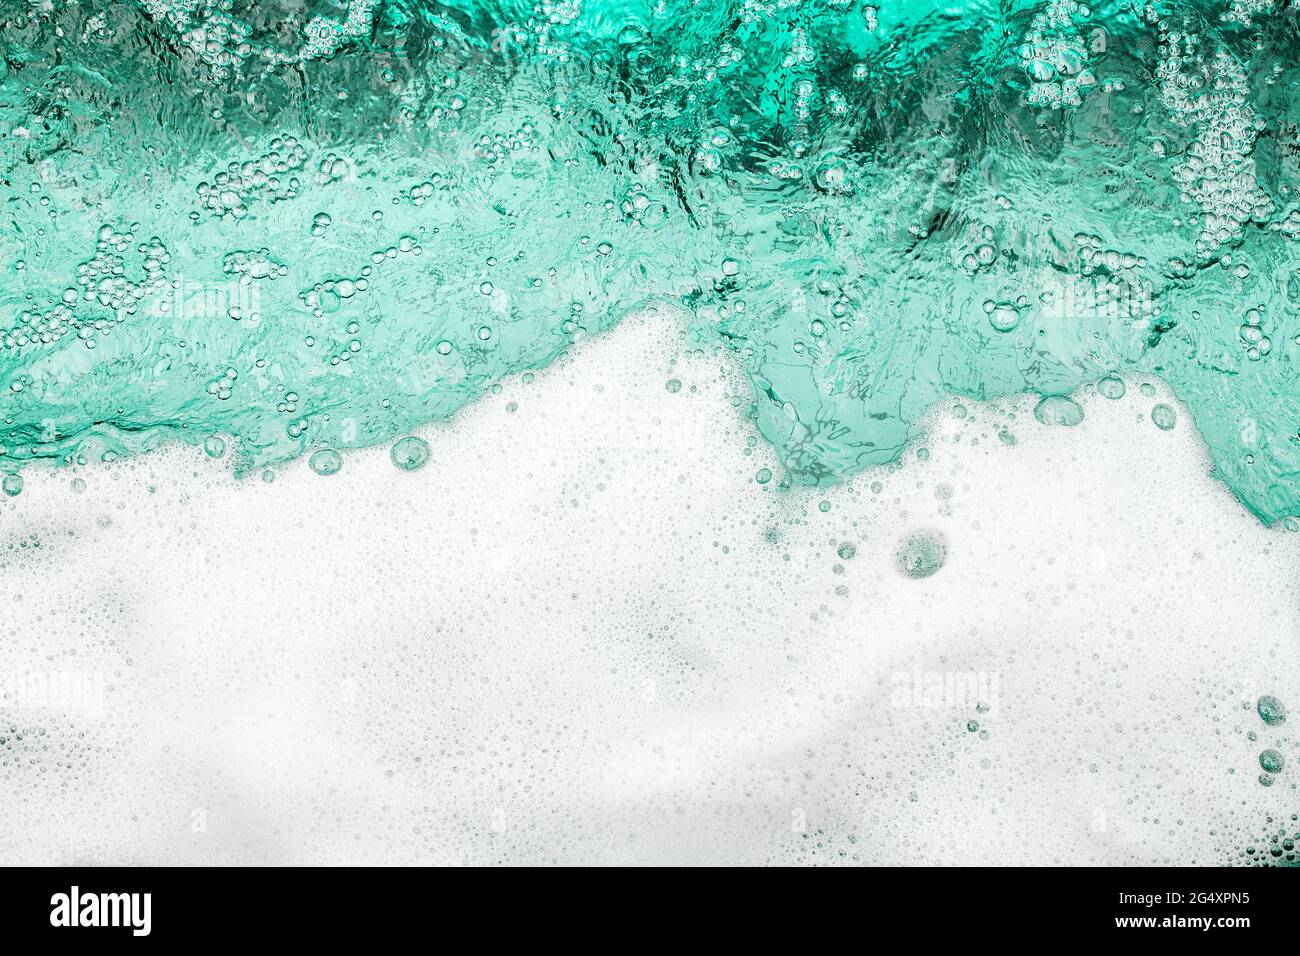 Mousse blanche fond d'eau bleu clair, bordure d'onde de mousse d'océan, texture des bulles de mousse, toile de fond moulante, motif de suds de savon, surface savonneuse Banque D'Images